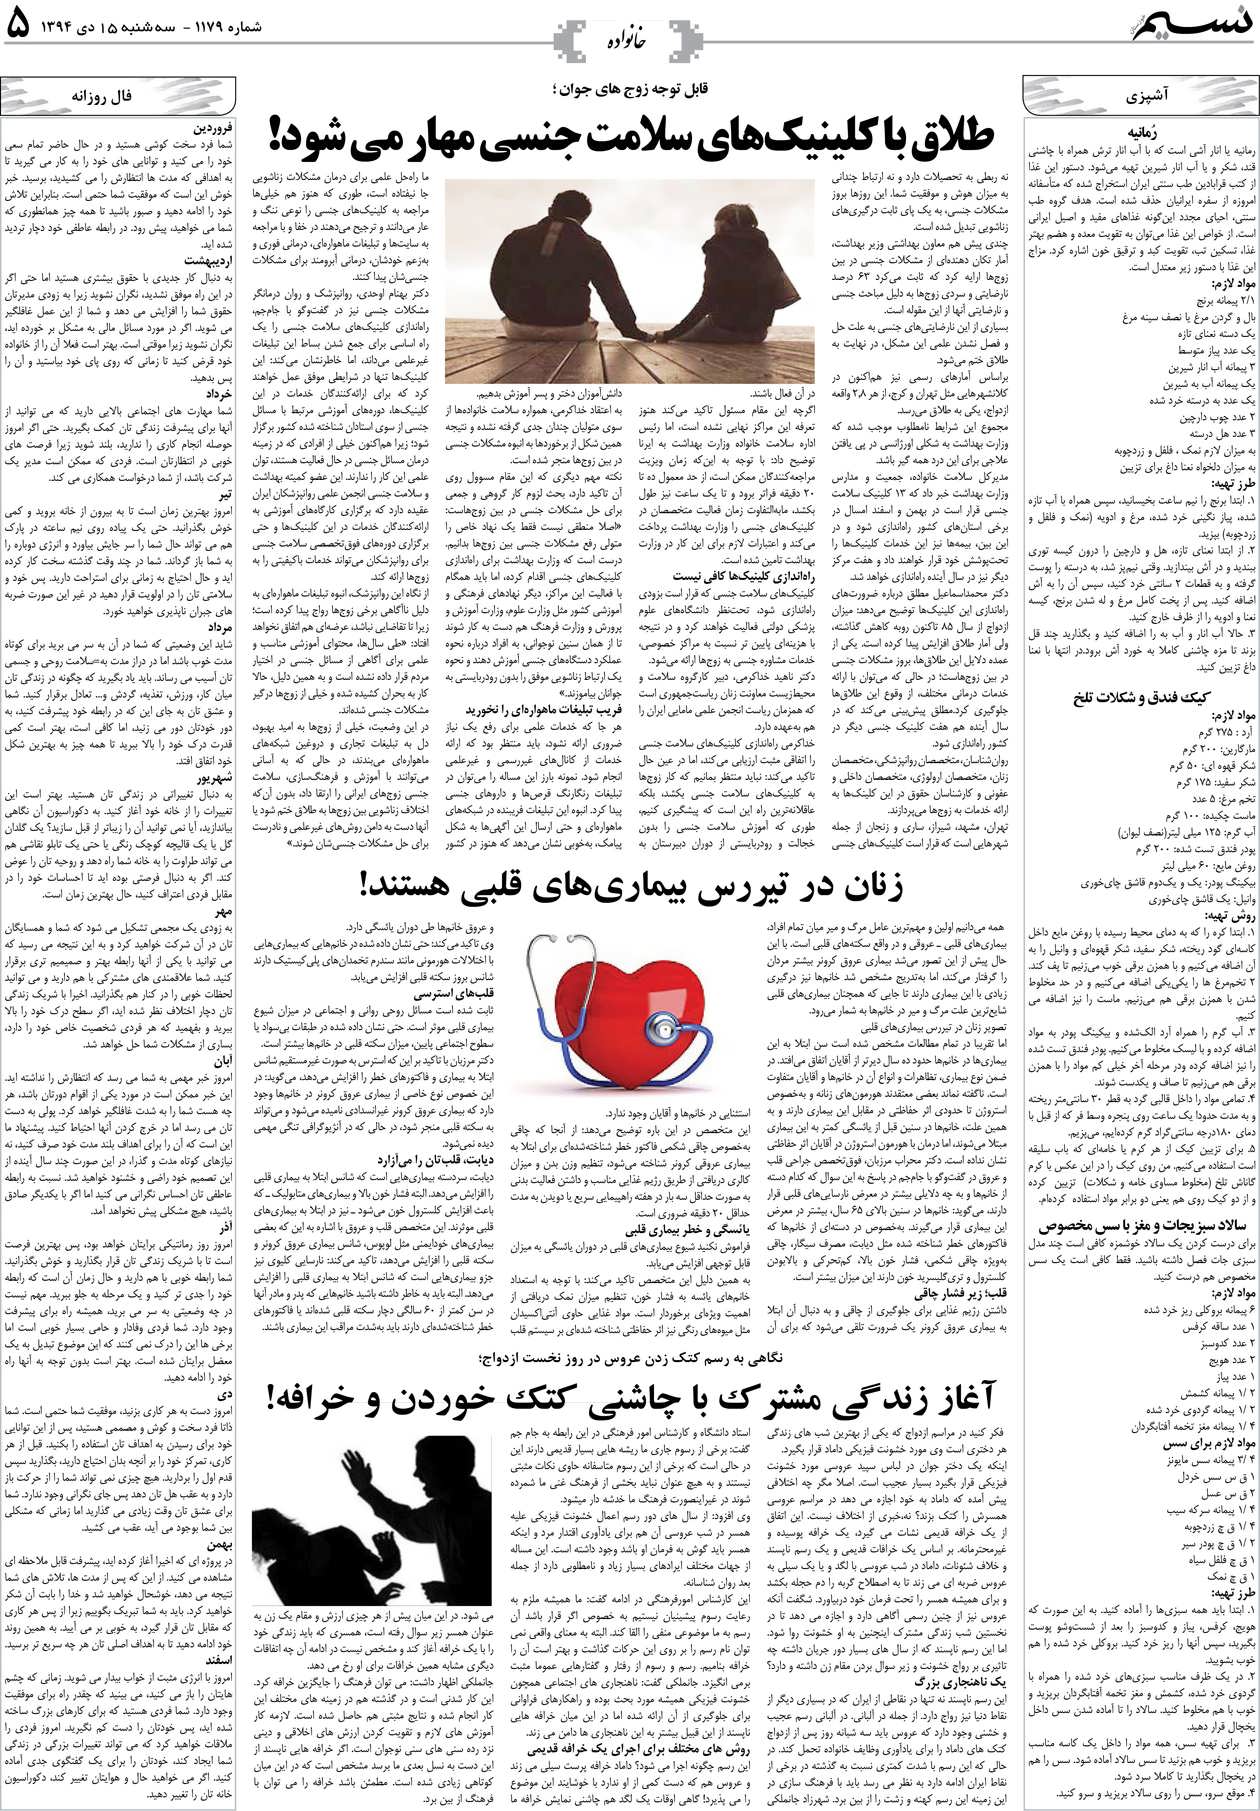 صفحه خانواده روزنامه نسیم شماره 1179